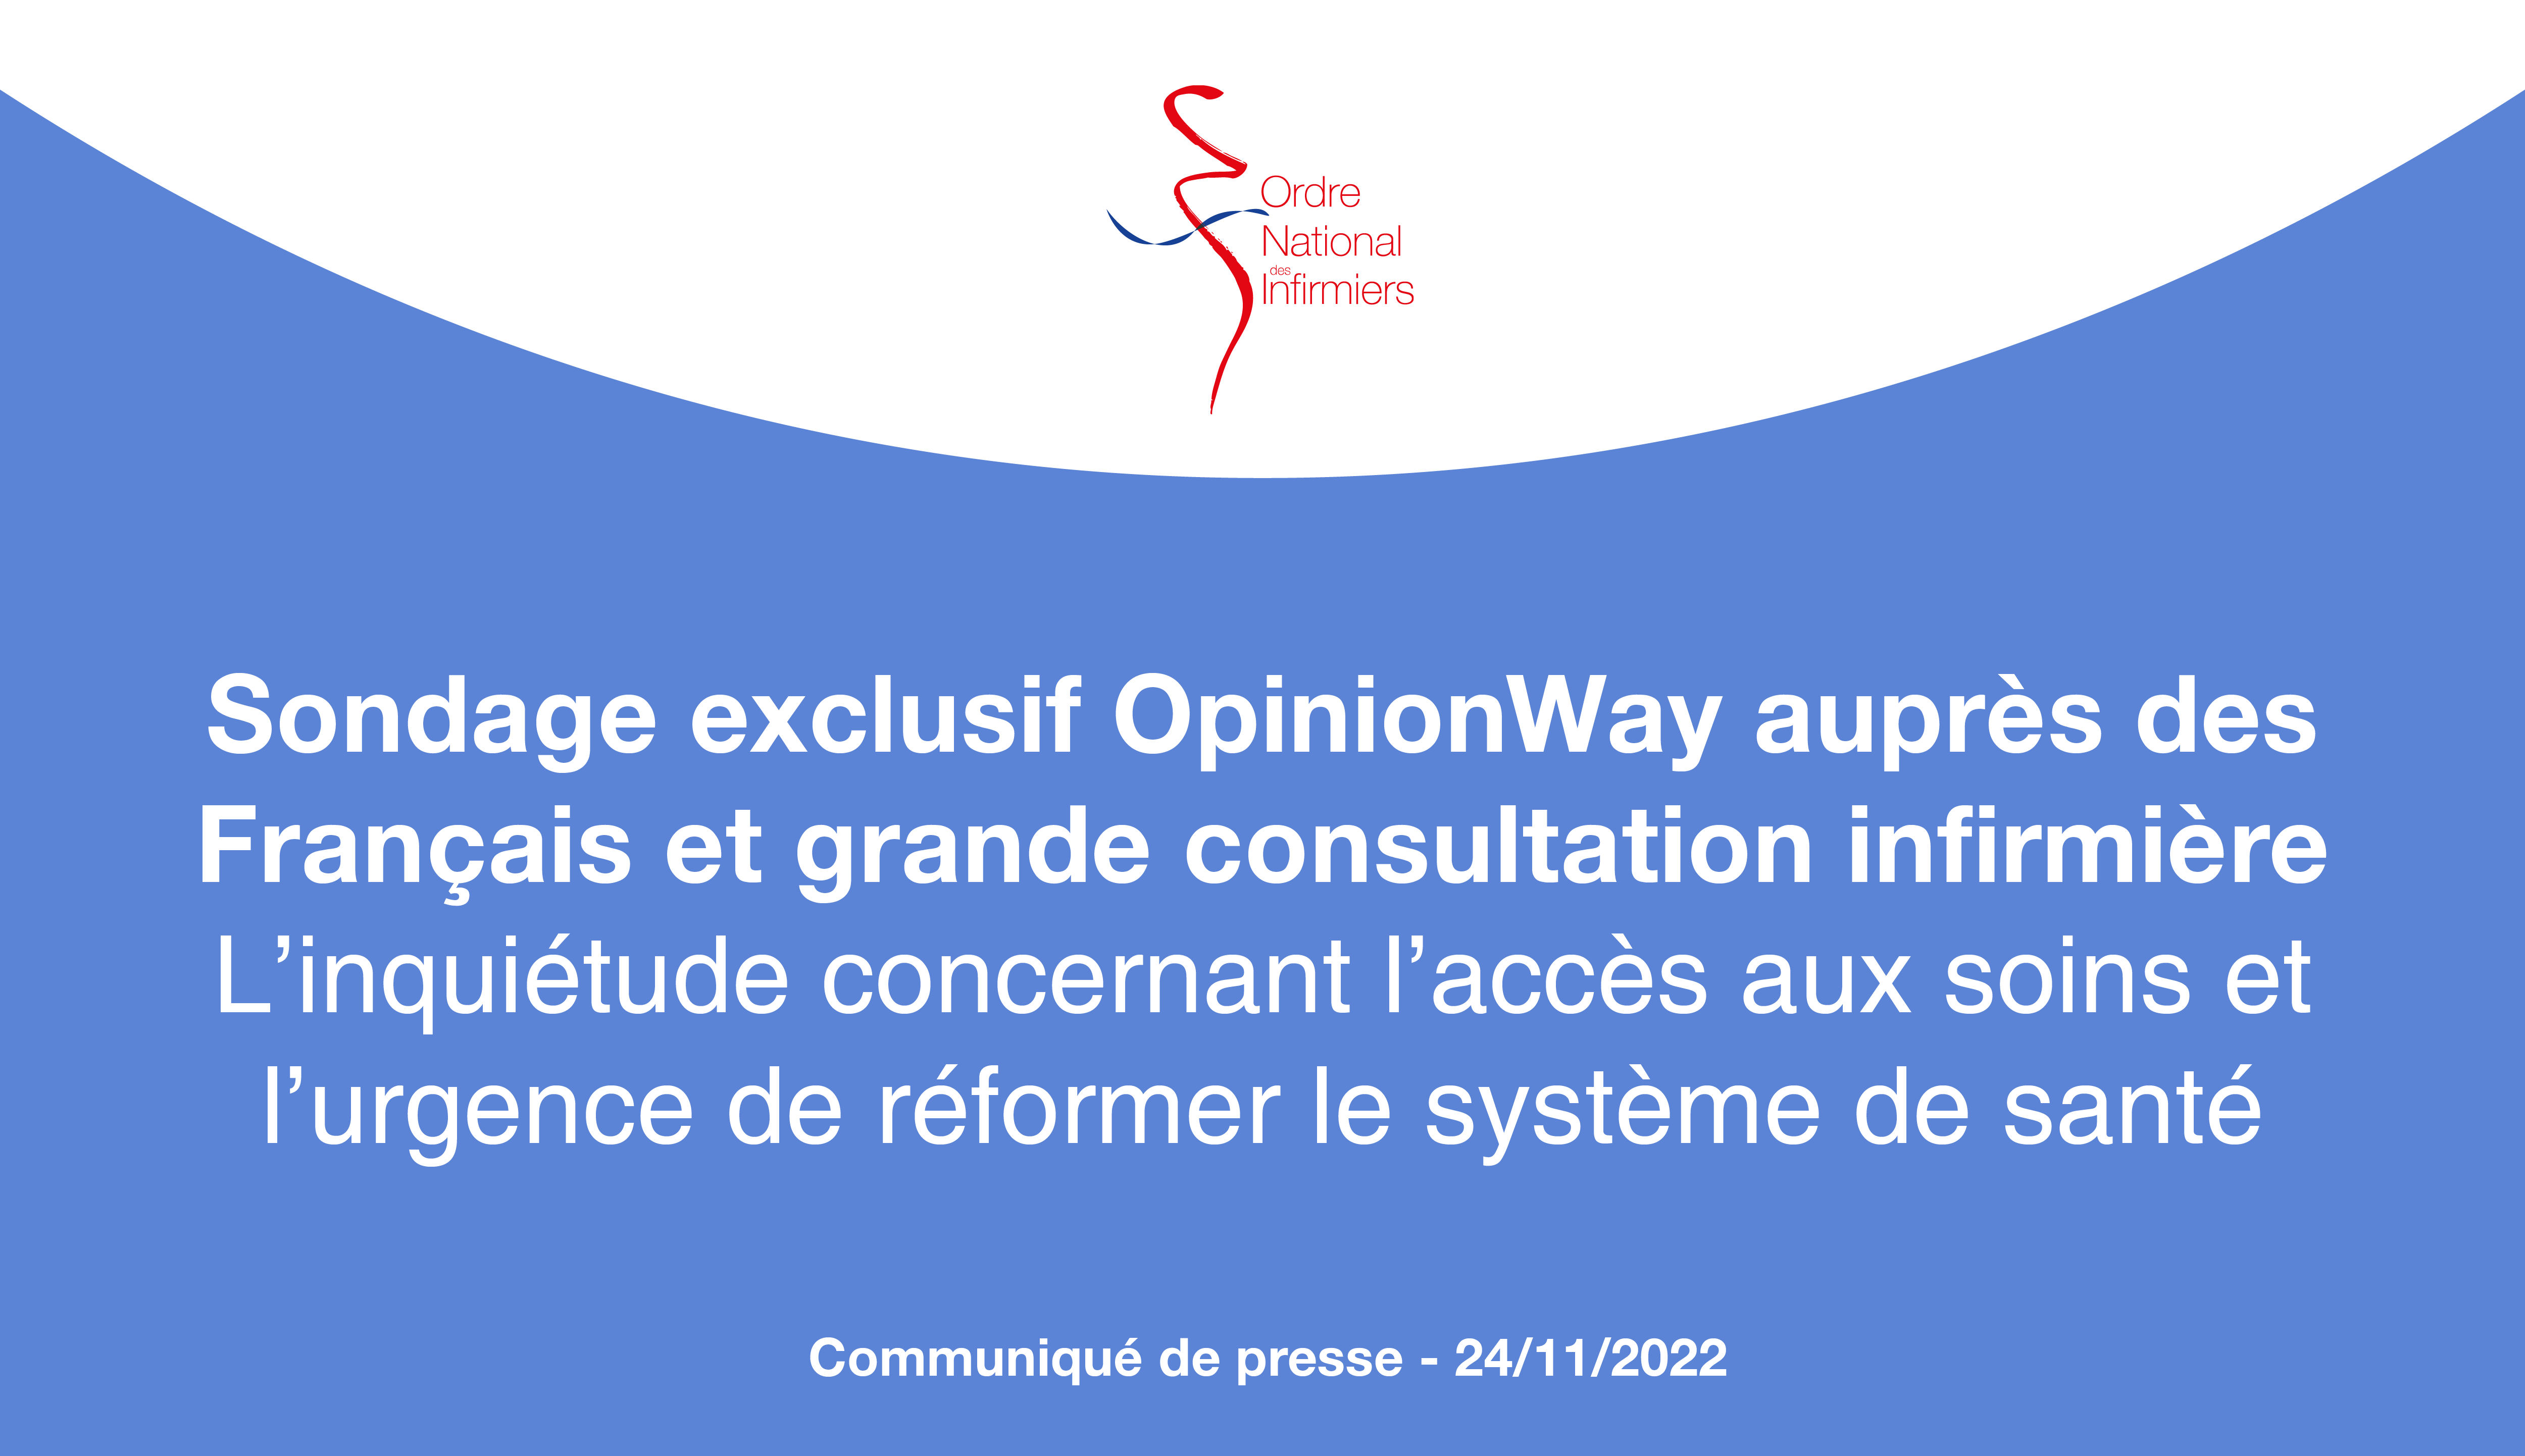 Sondage exclusif OpinionWay auprès des Français et grande consultation infirmière : l'urgence de réformer le système de santé